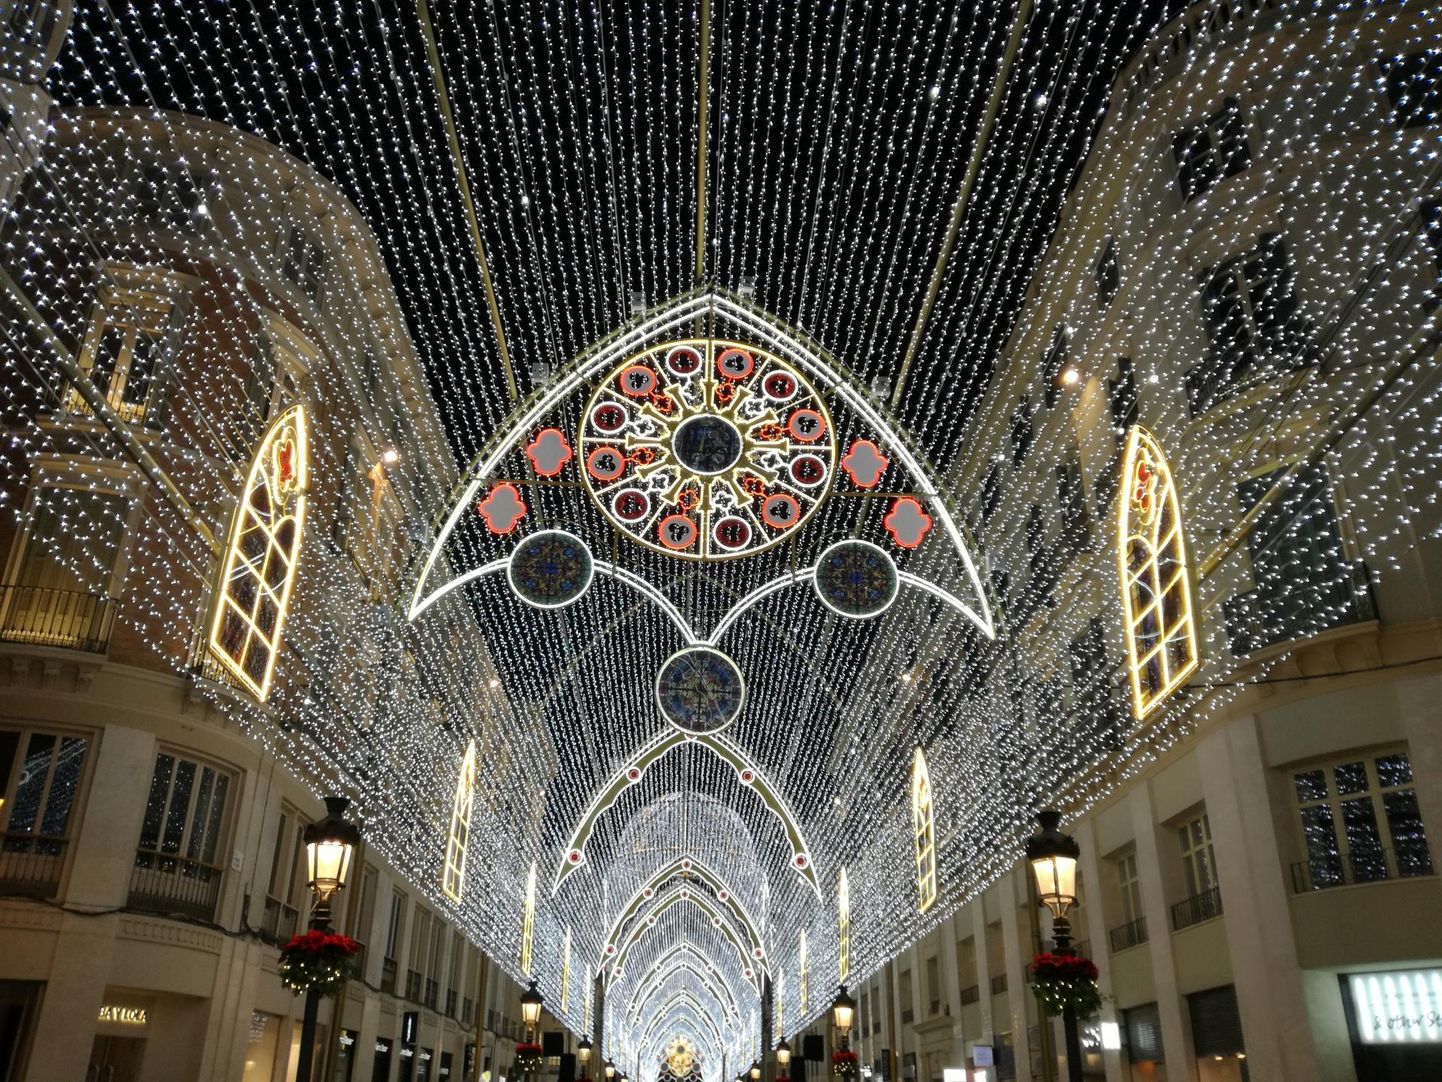 Malaga jõulutuled on üle Euroopa kuulsad.